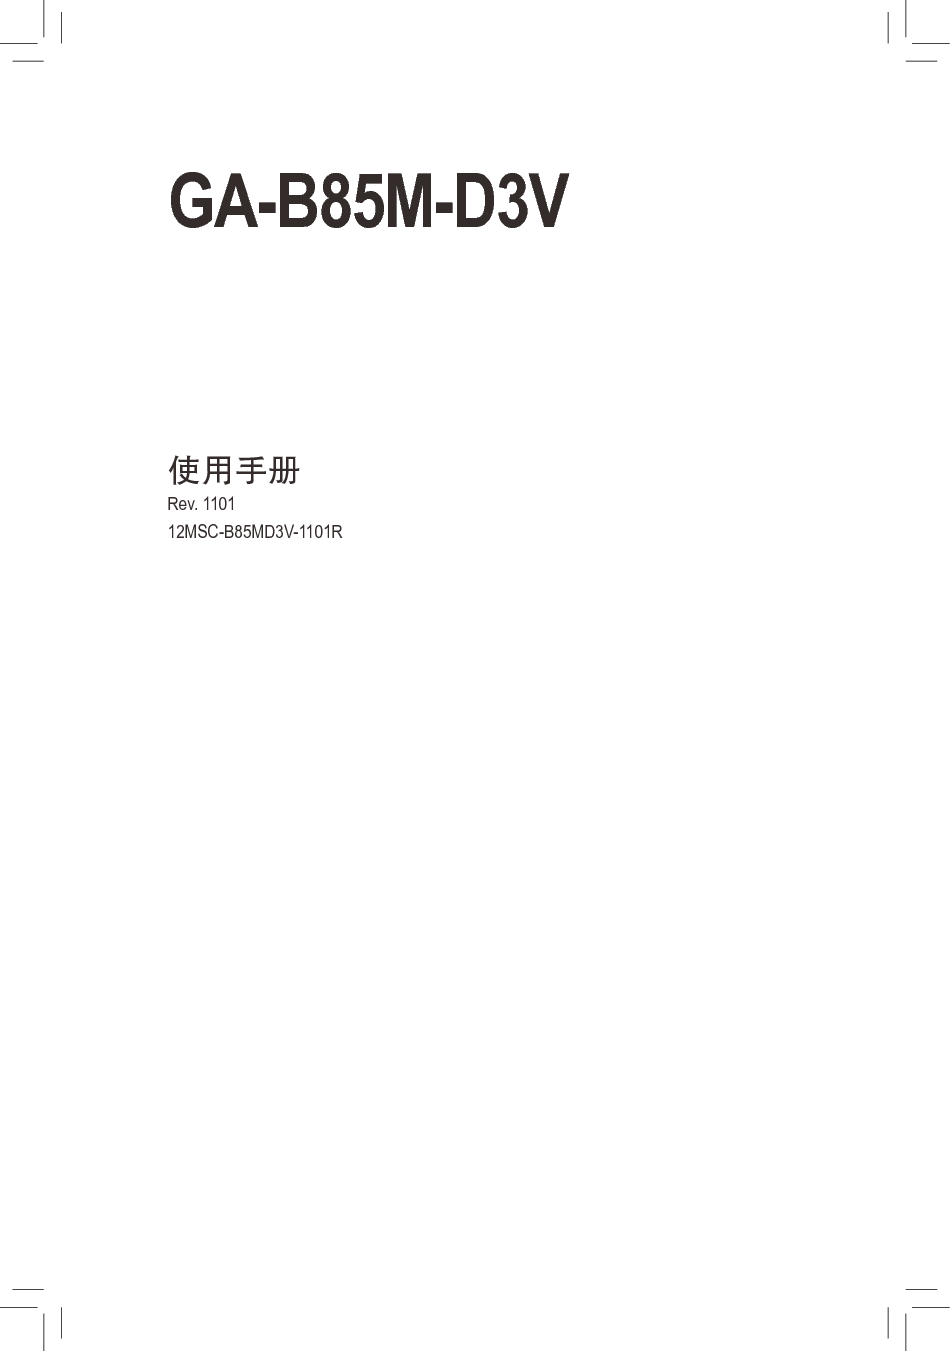 技嘉 Gigabyte GA-B85M-D3V 1101版 使用手册 封面